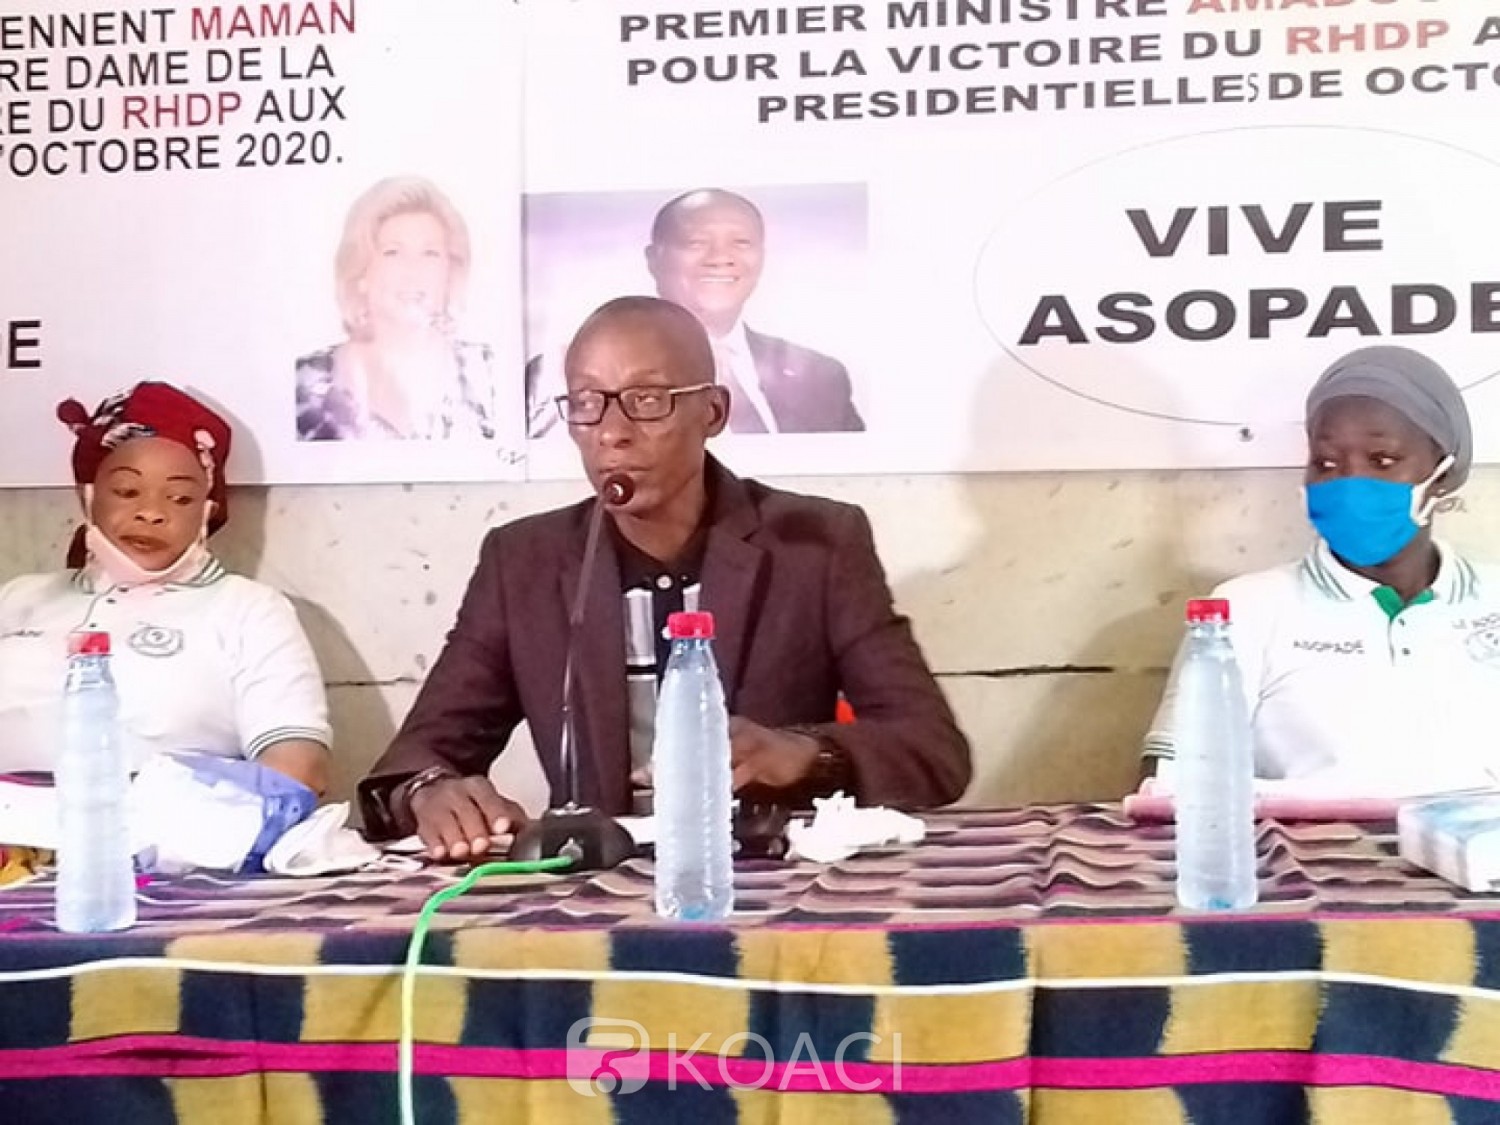 Côte d'Ivoire : Bouaké, libération de Gbagbo et Blé,  une structure proche du RHDP « salut la décision de la CPI »